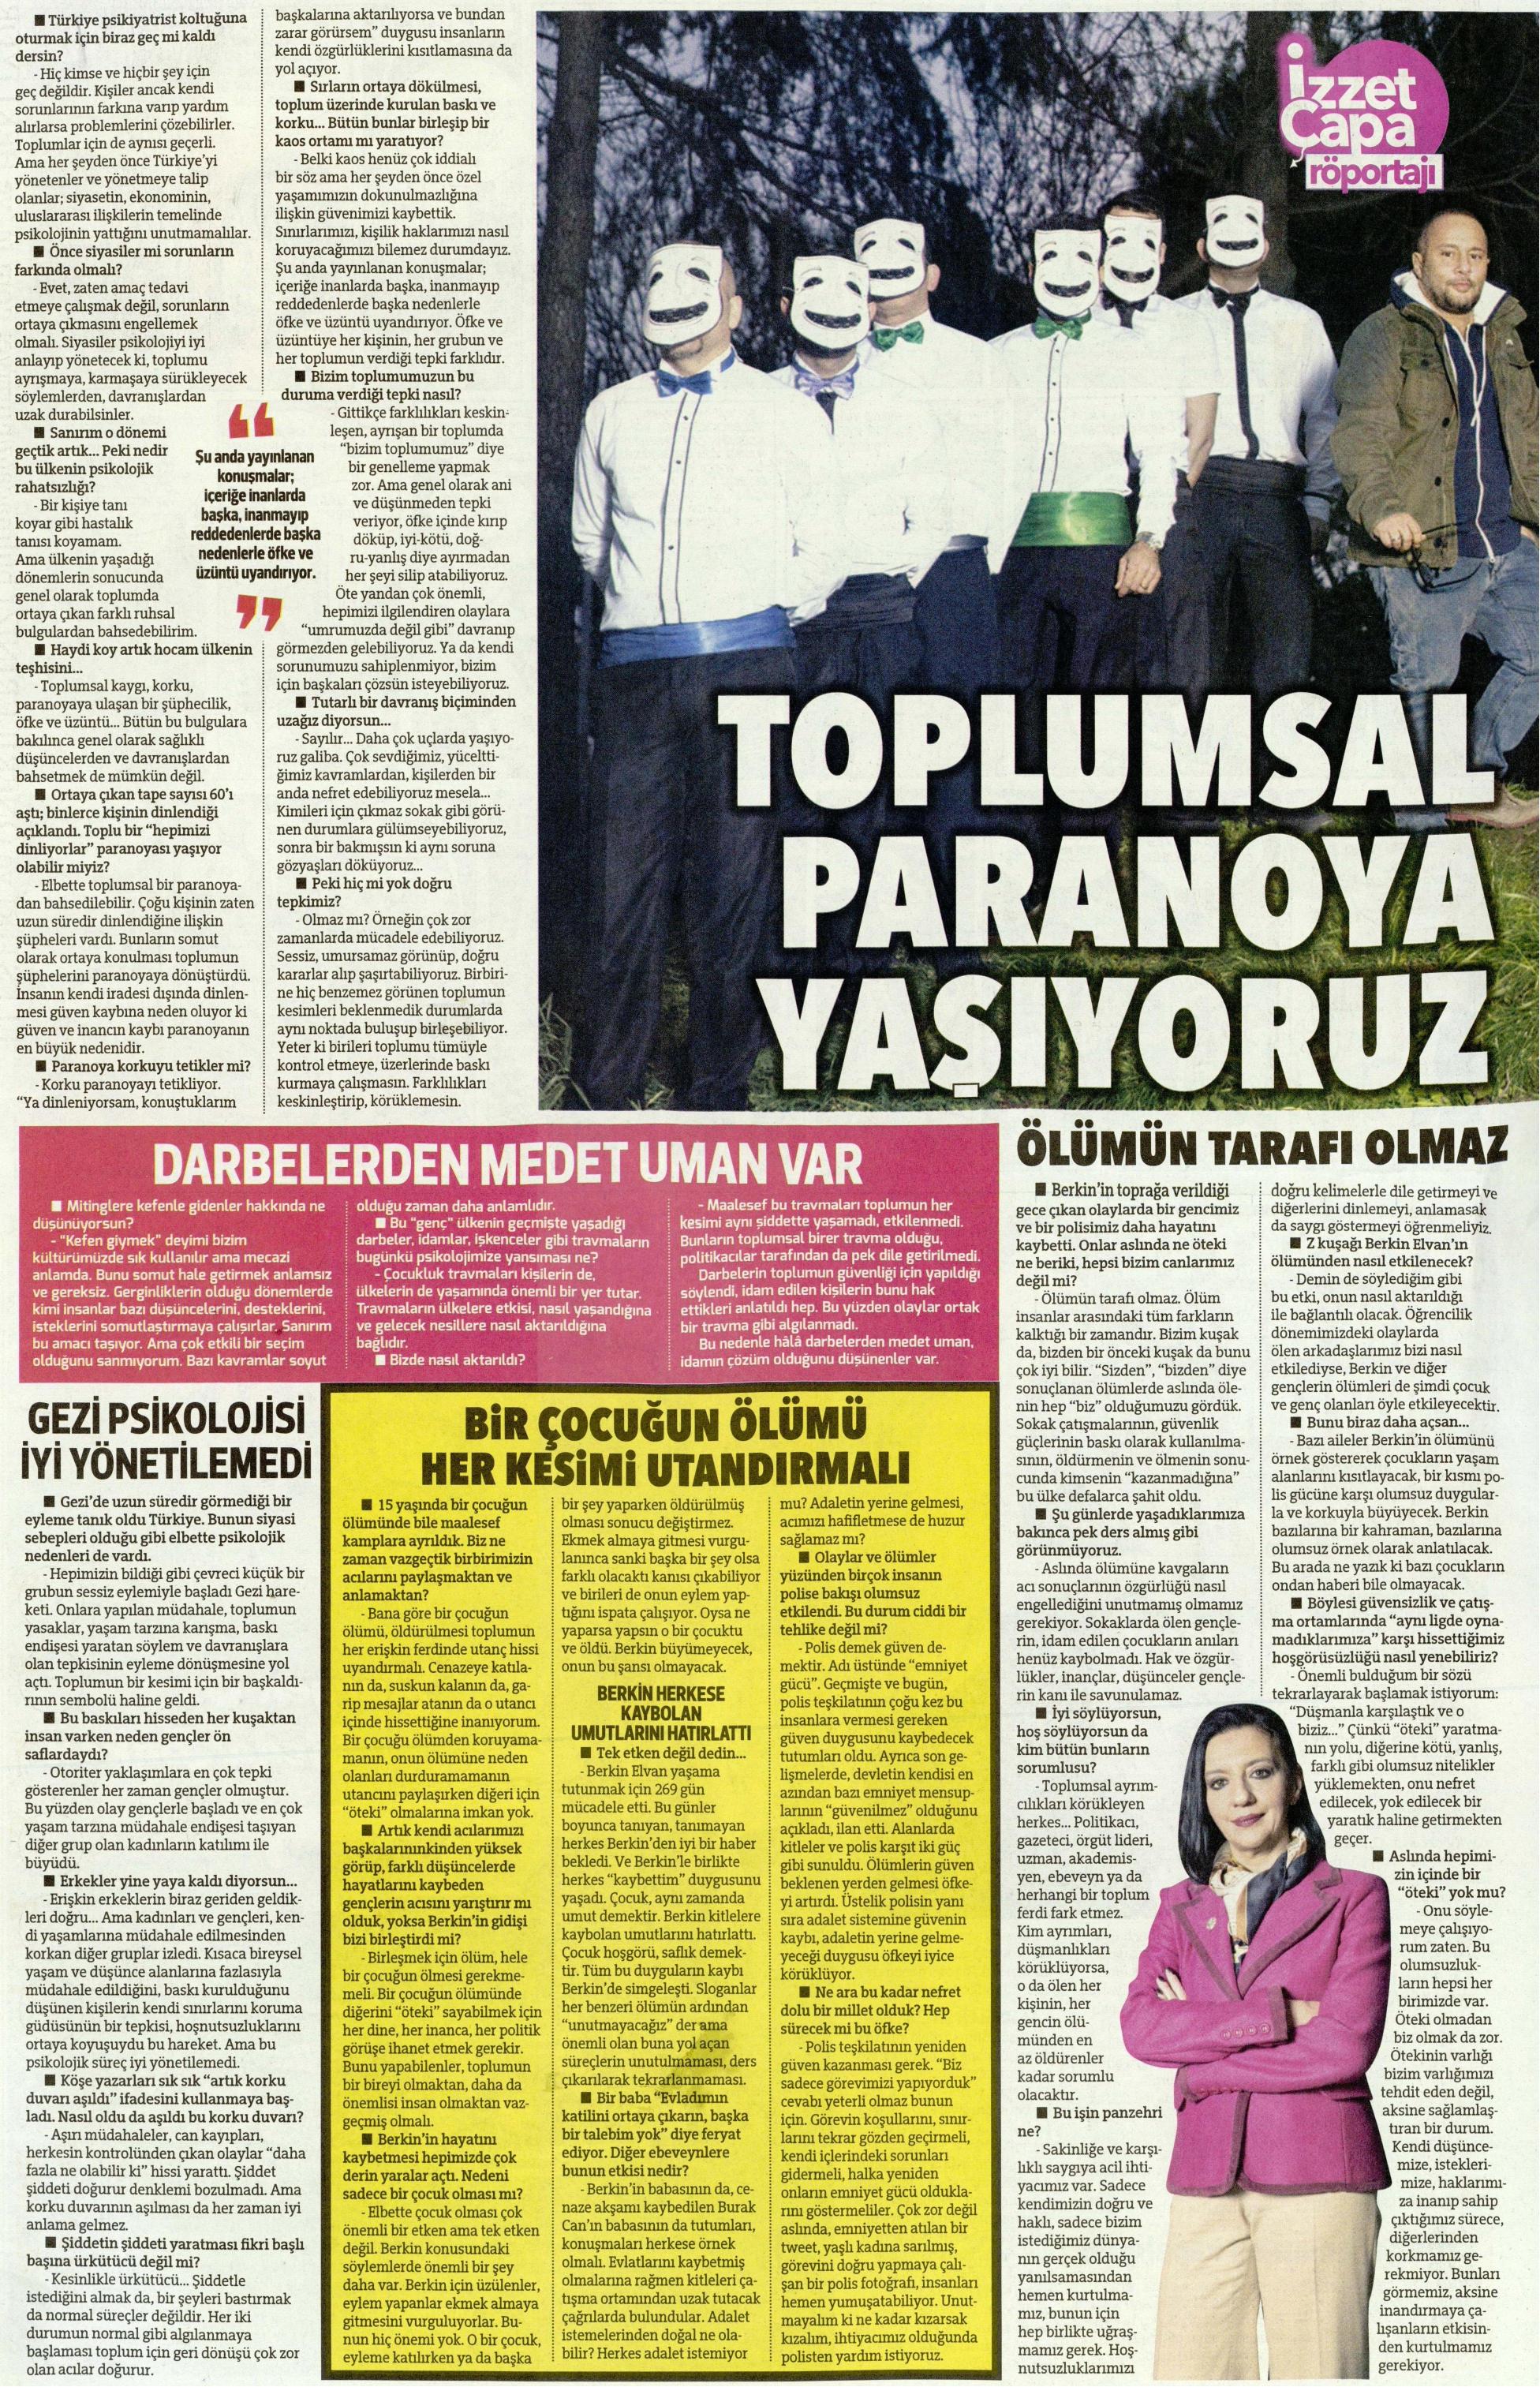 Toplumsal paranoya yaşıyoruz - Hürriyet Kelebek 16.03.2014